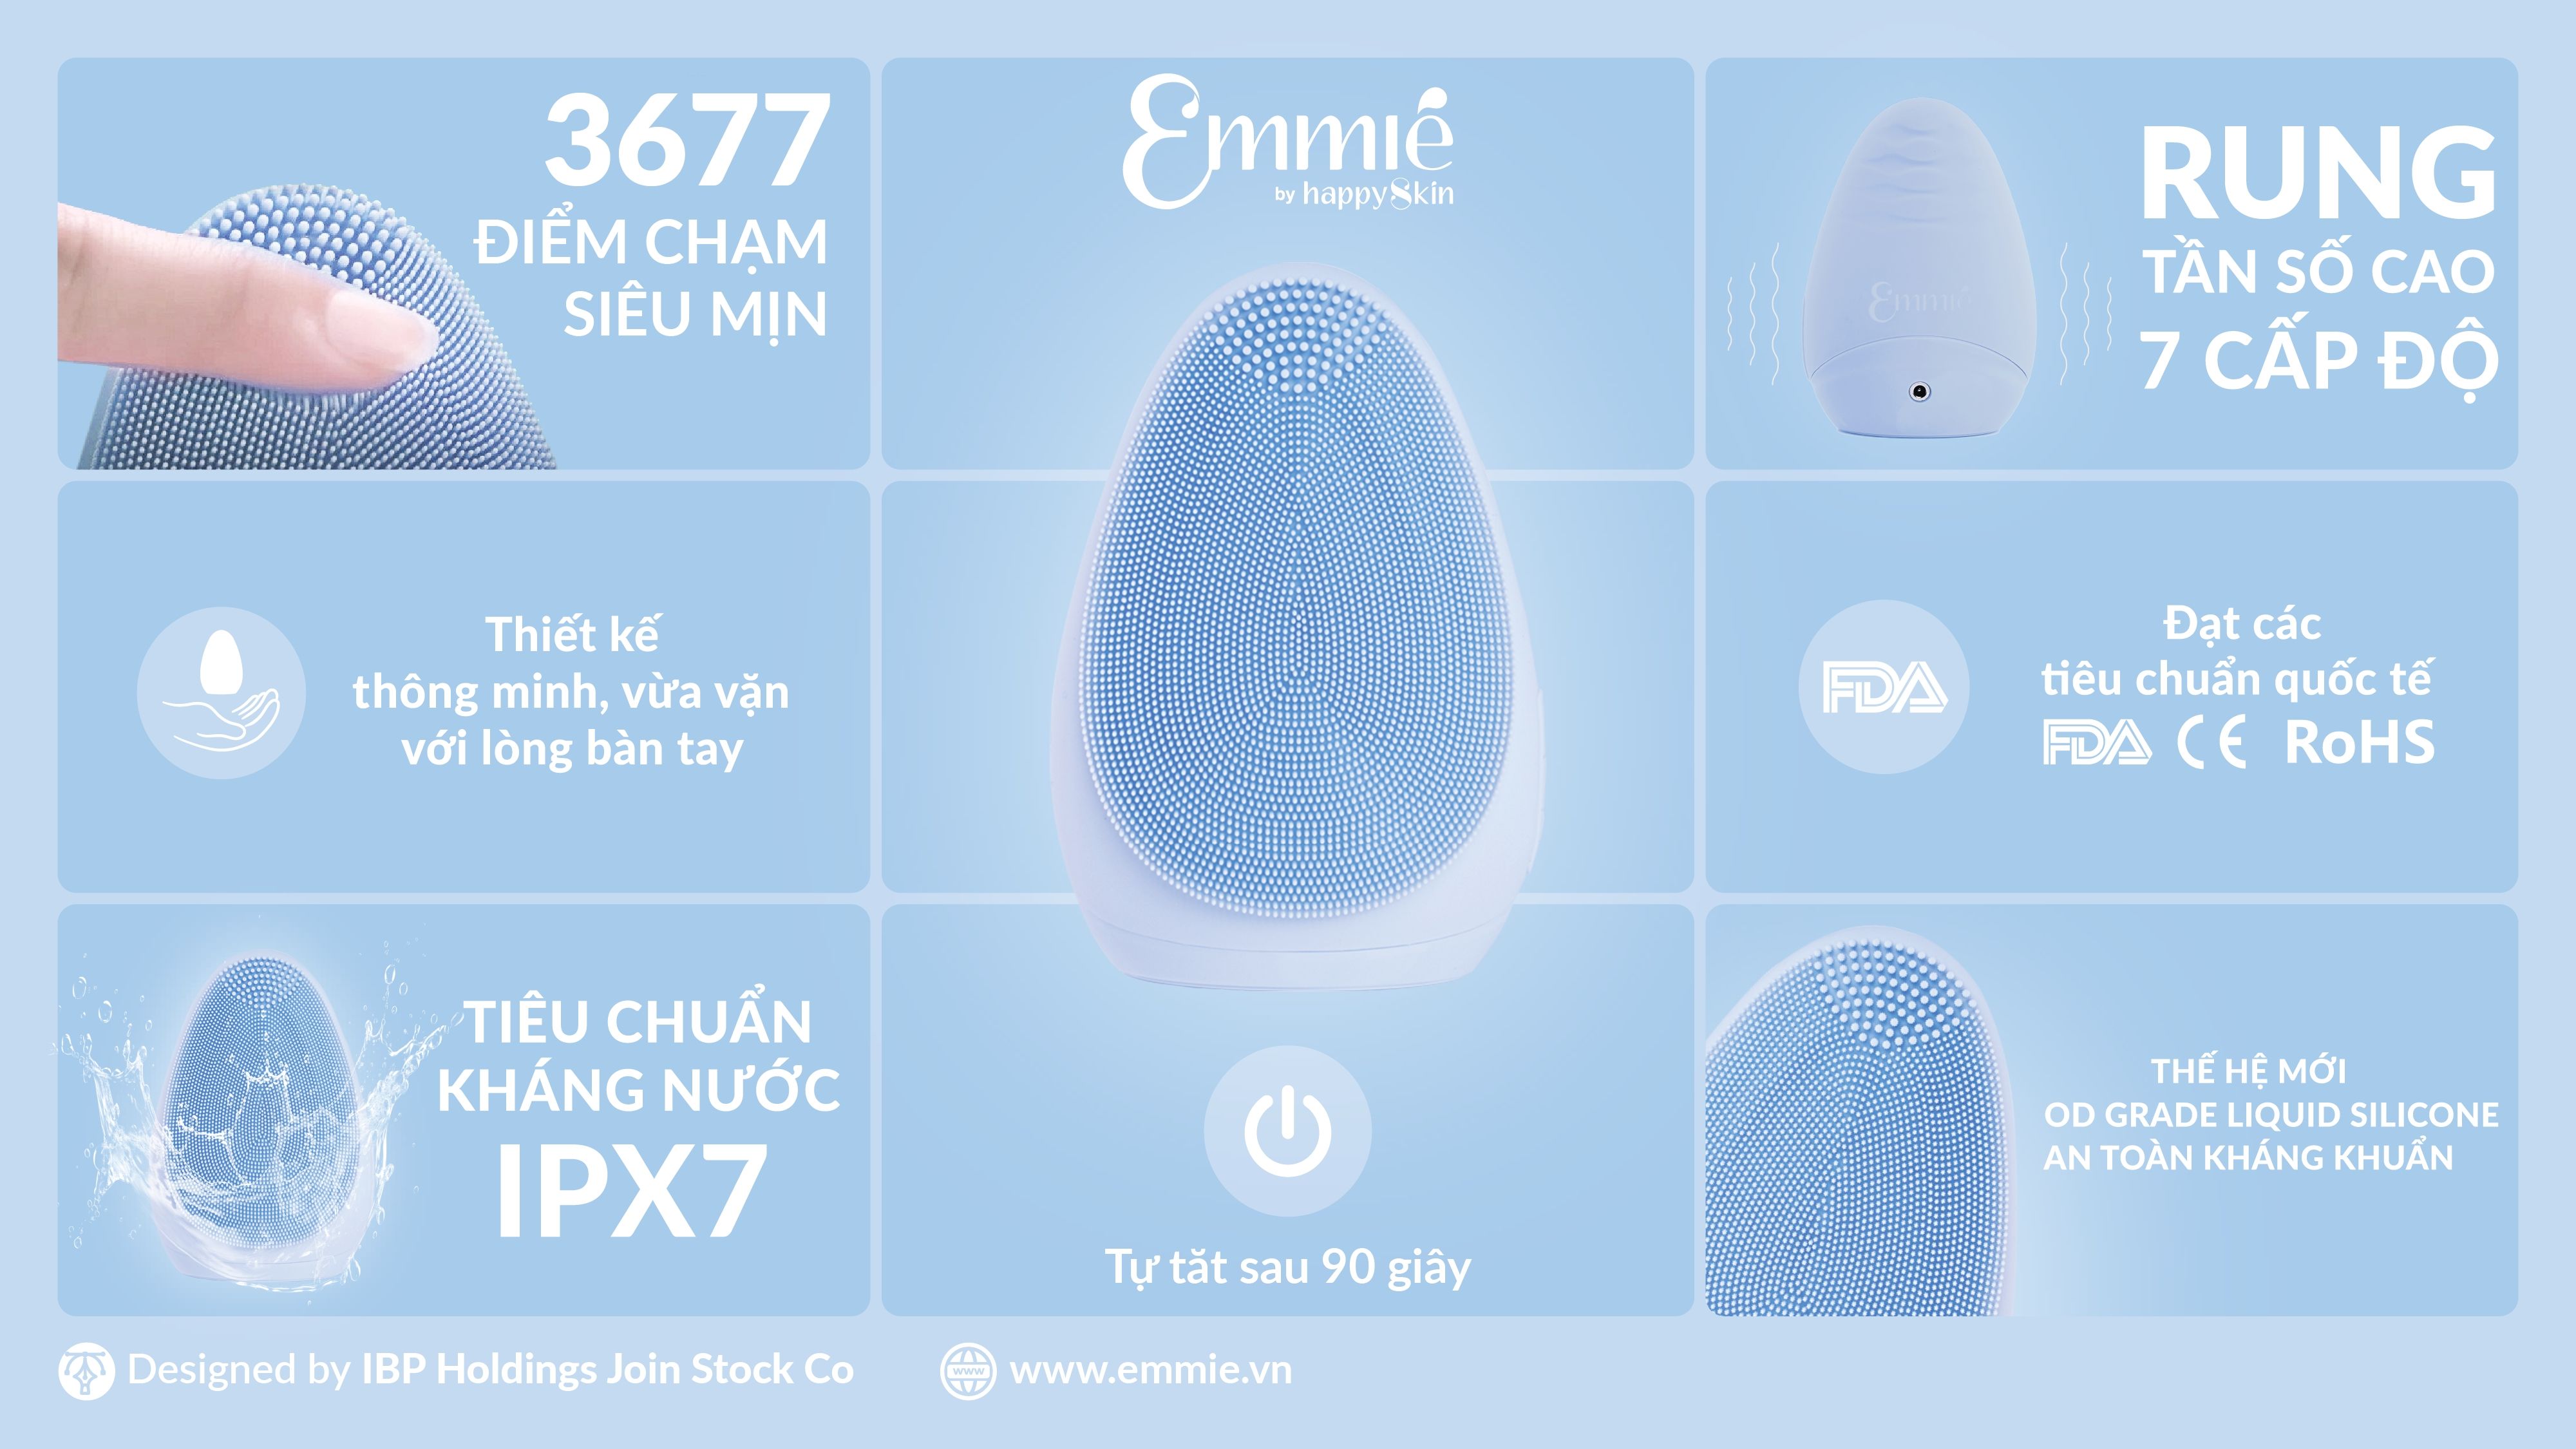 Máy Rửa Mặt Emmié Premium Facial Cleansing Brush - Đạt Chứng Nhận FDA - Sky Blue